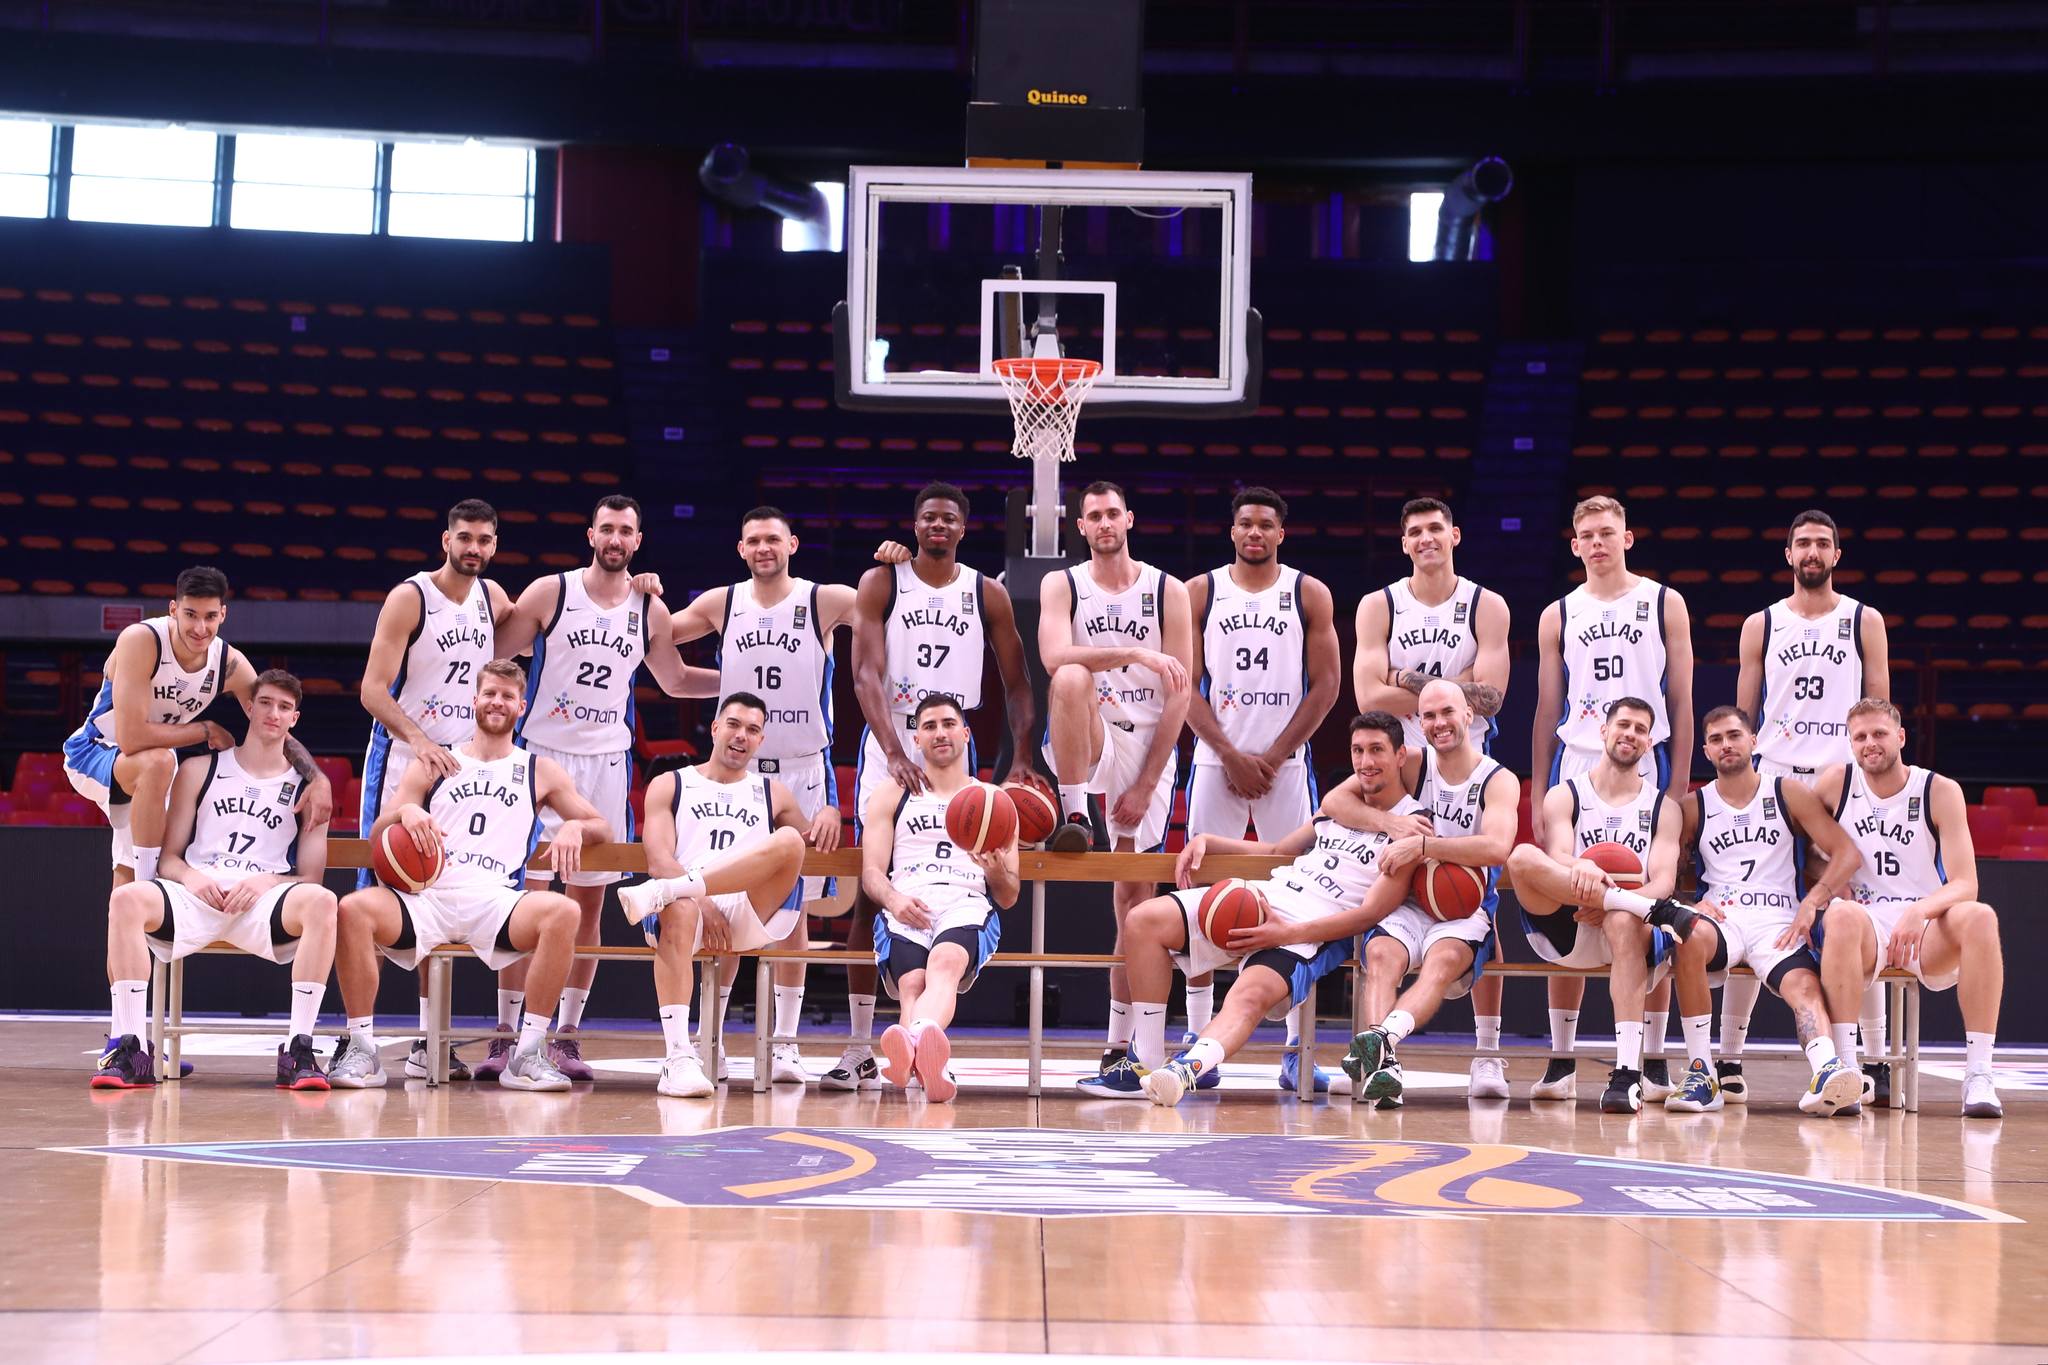 Ελλάδα – Πολωνία: Πρώτος φιλικός αγώνας για την Εθνική μπάσκετ χωρίς Γιάννη Αντετοκούνμπο και Κώστα Σλούκα